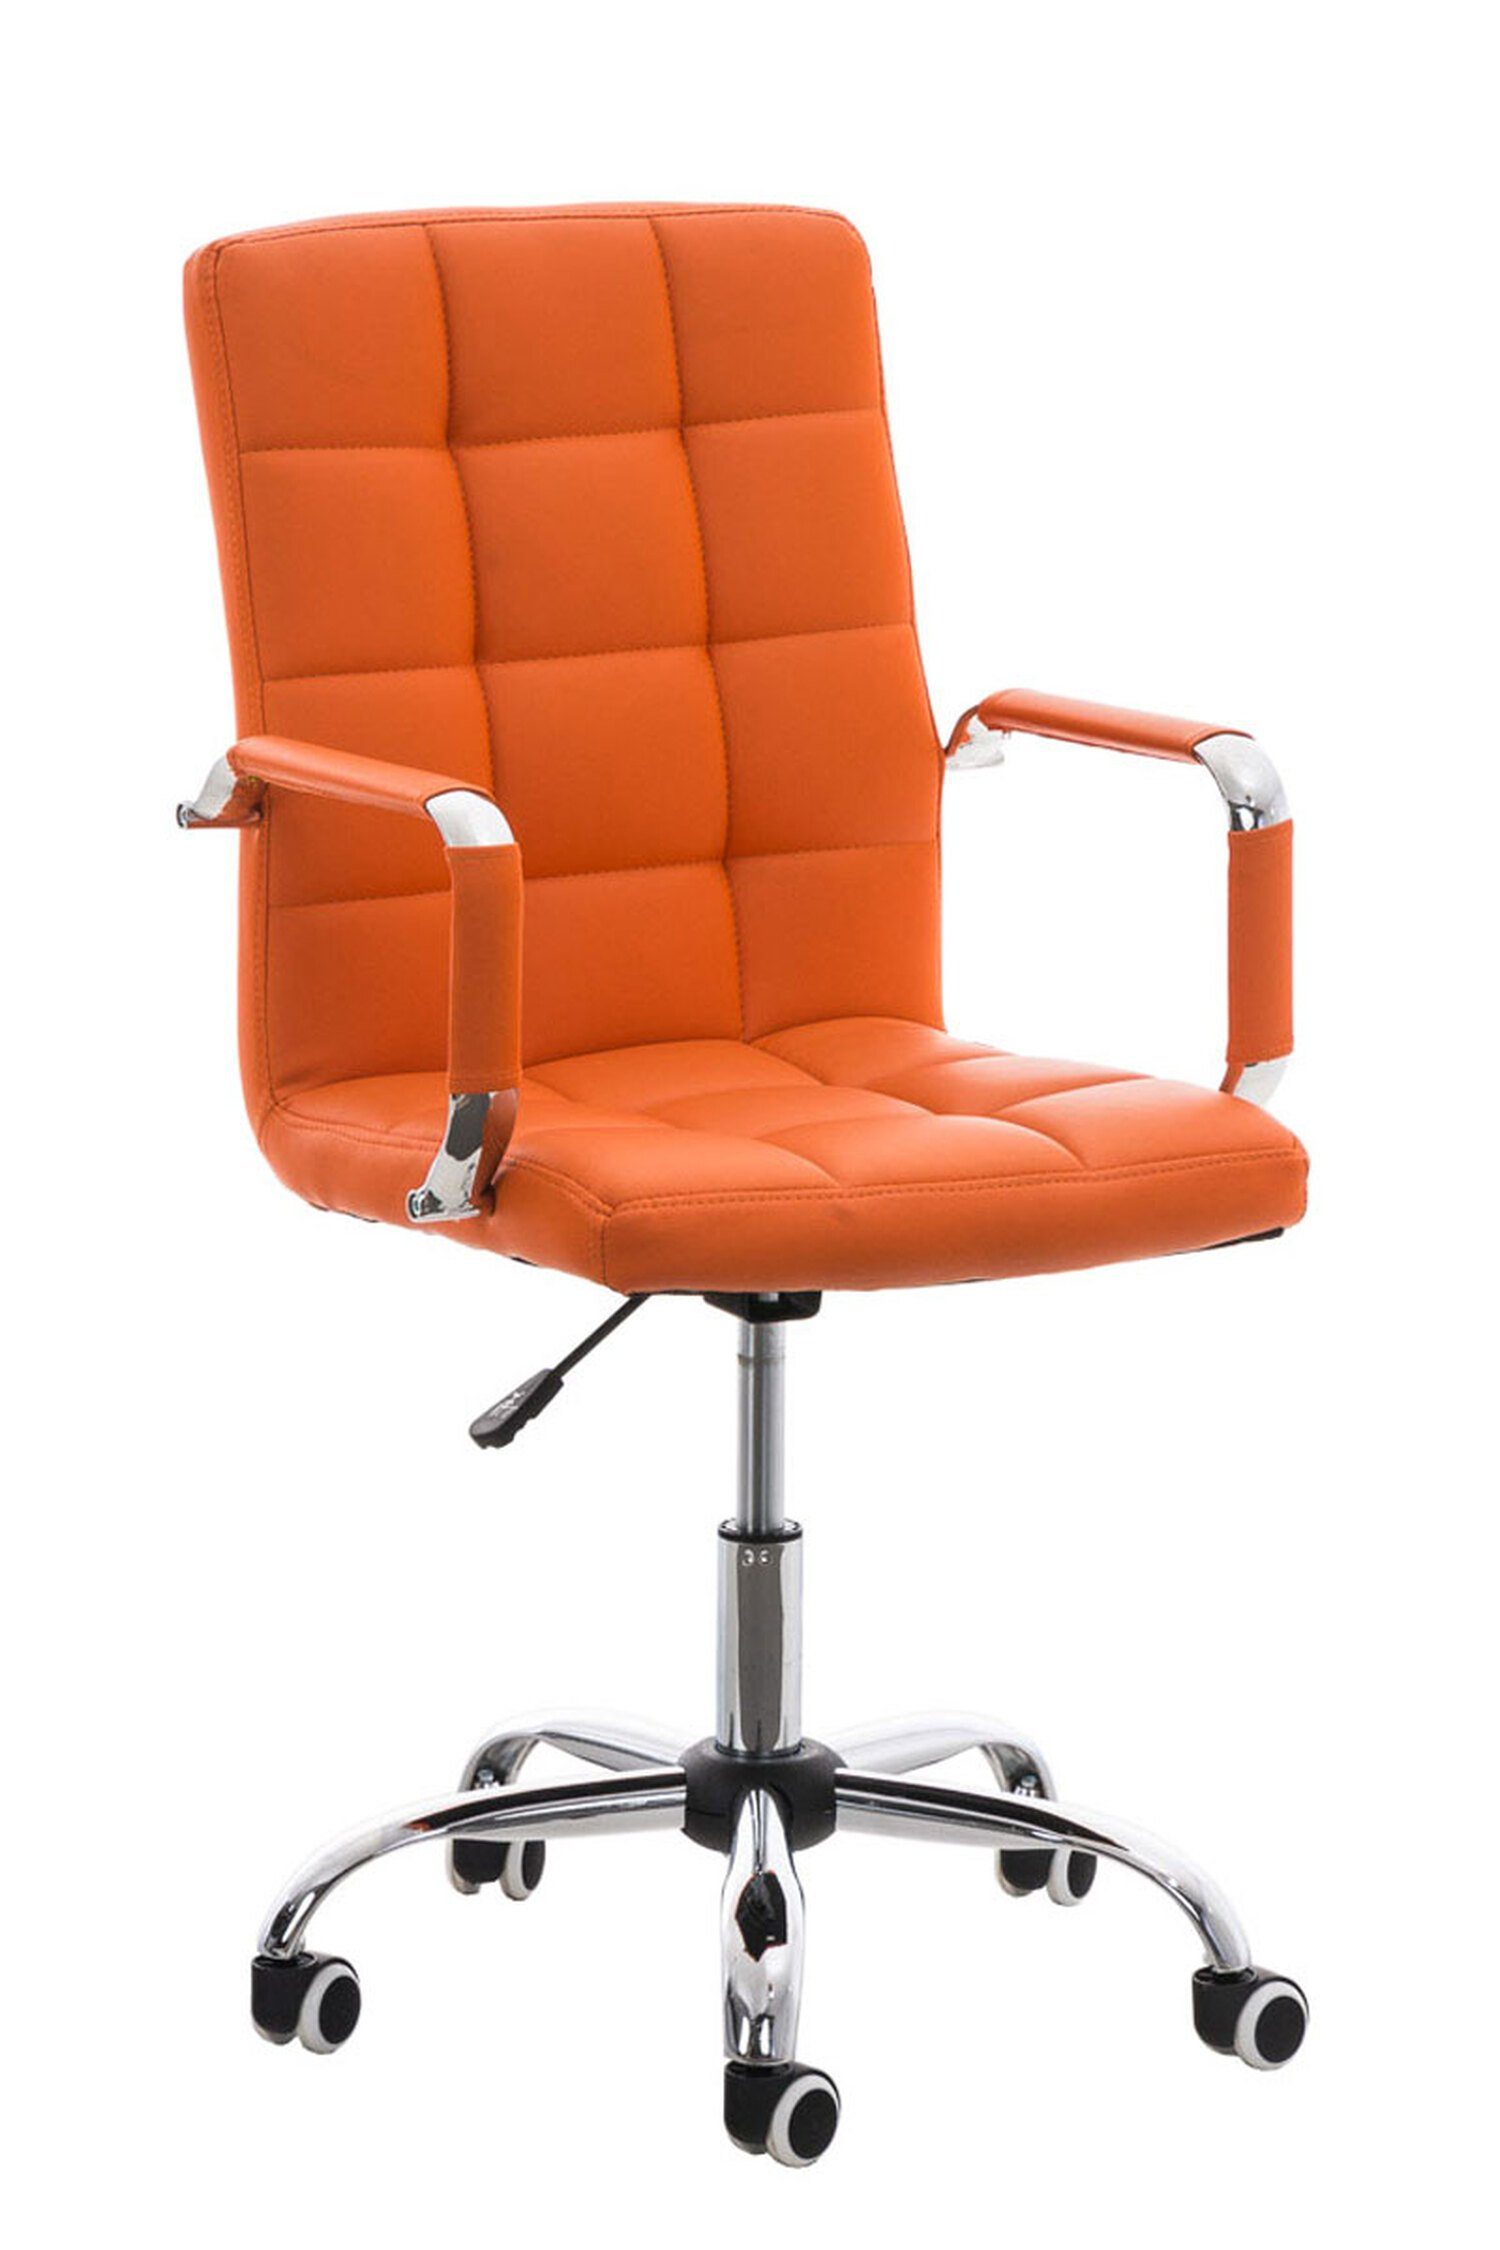 TPFLiving Bürostuhl Deal V2 mit bequemer Rückenlehne (Schreibtischstuhl, Drehstuhl, Konferenzstuhl, Chefsessel), Gestell: Metall chrom - Sitzfläche: Kunstleder orange